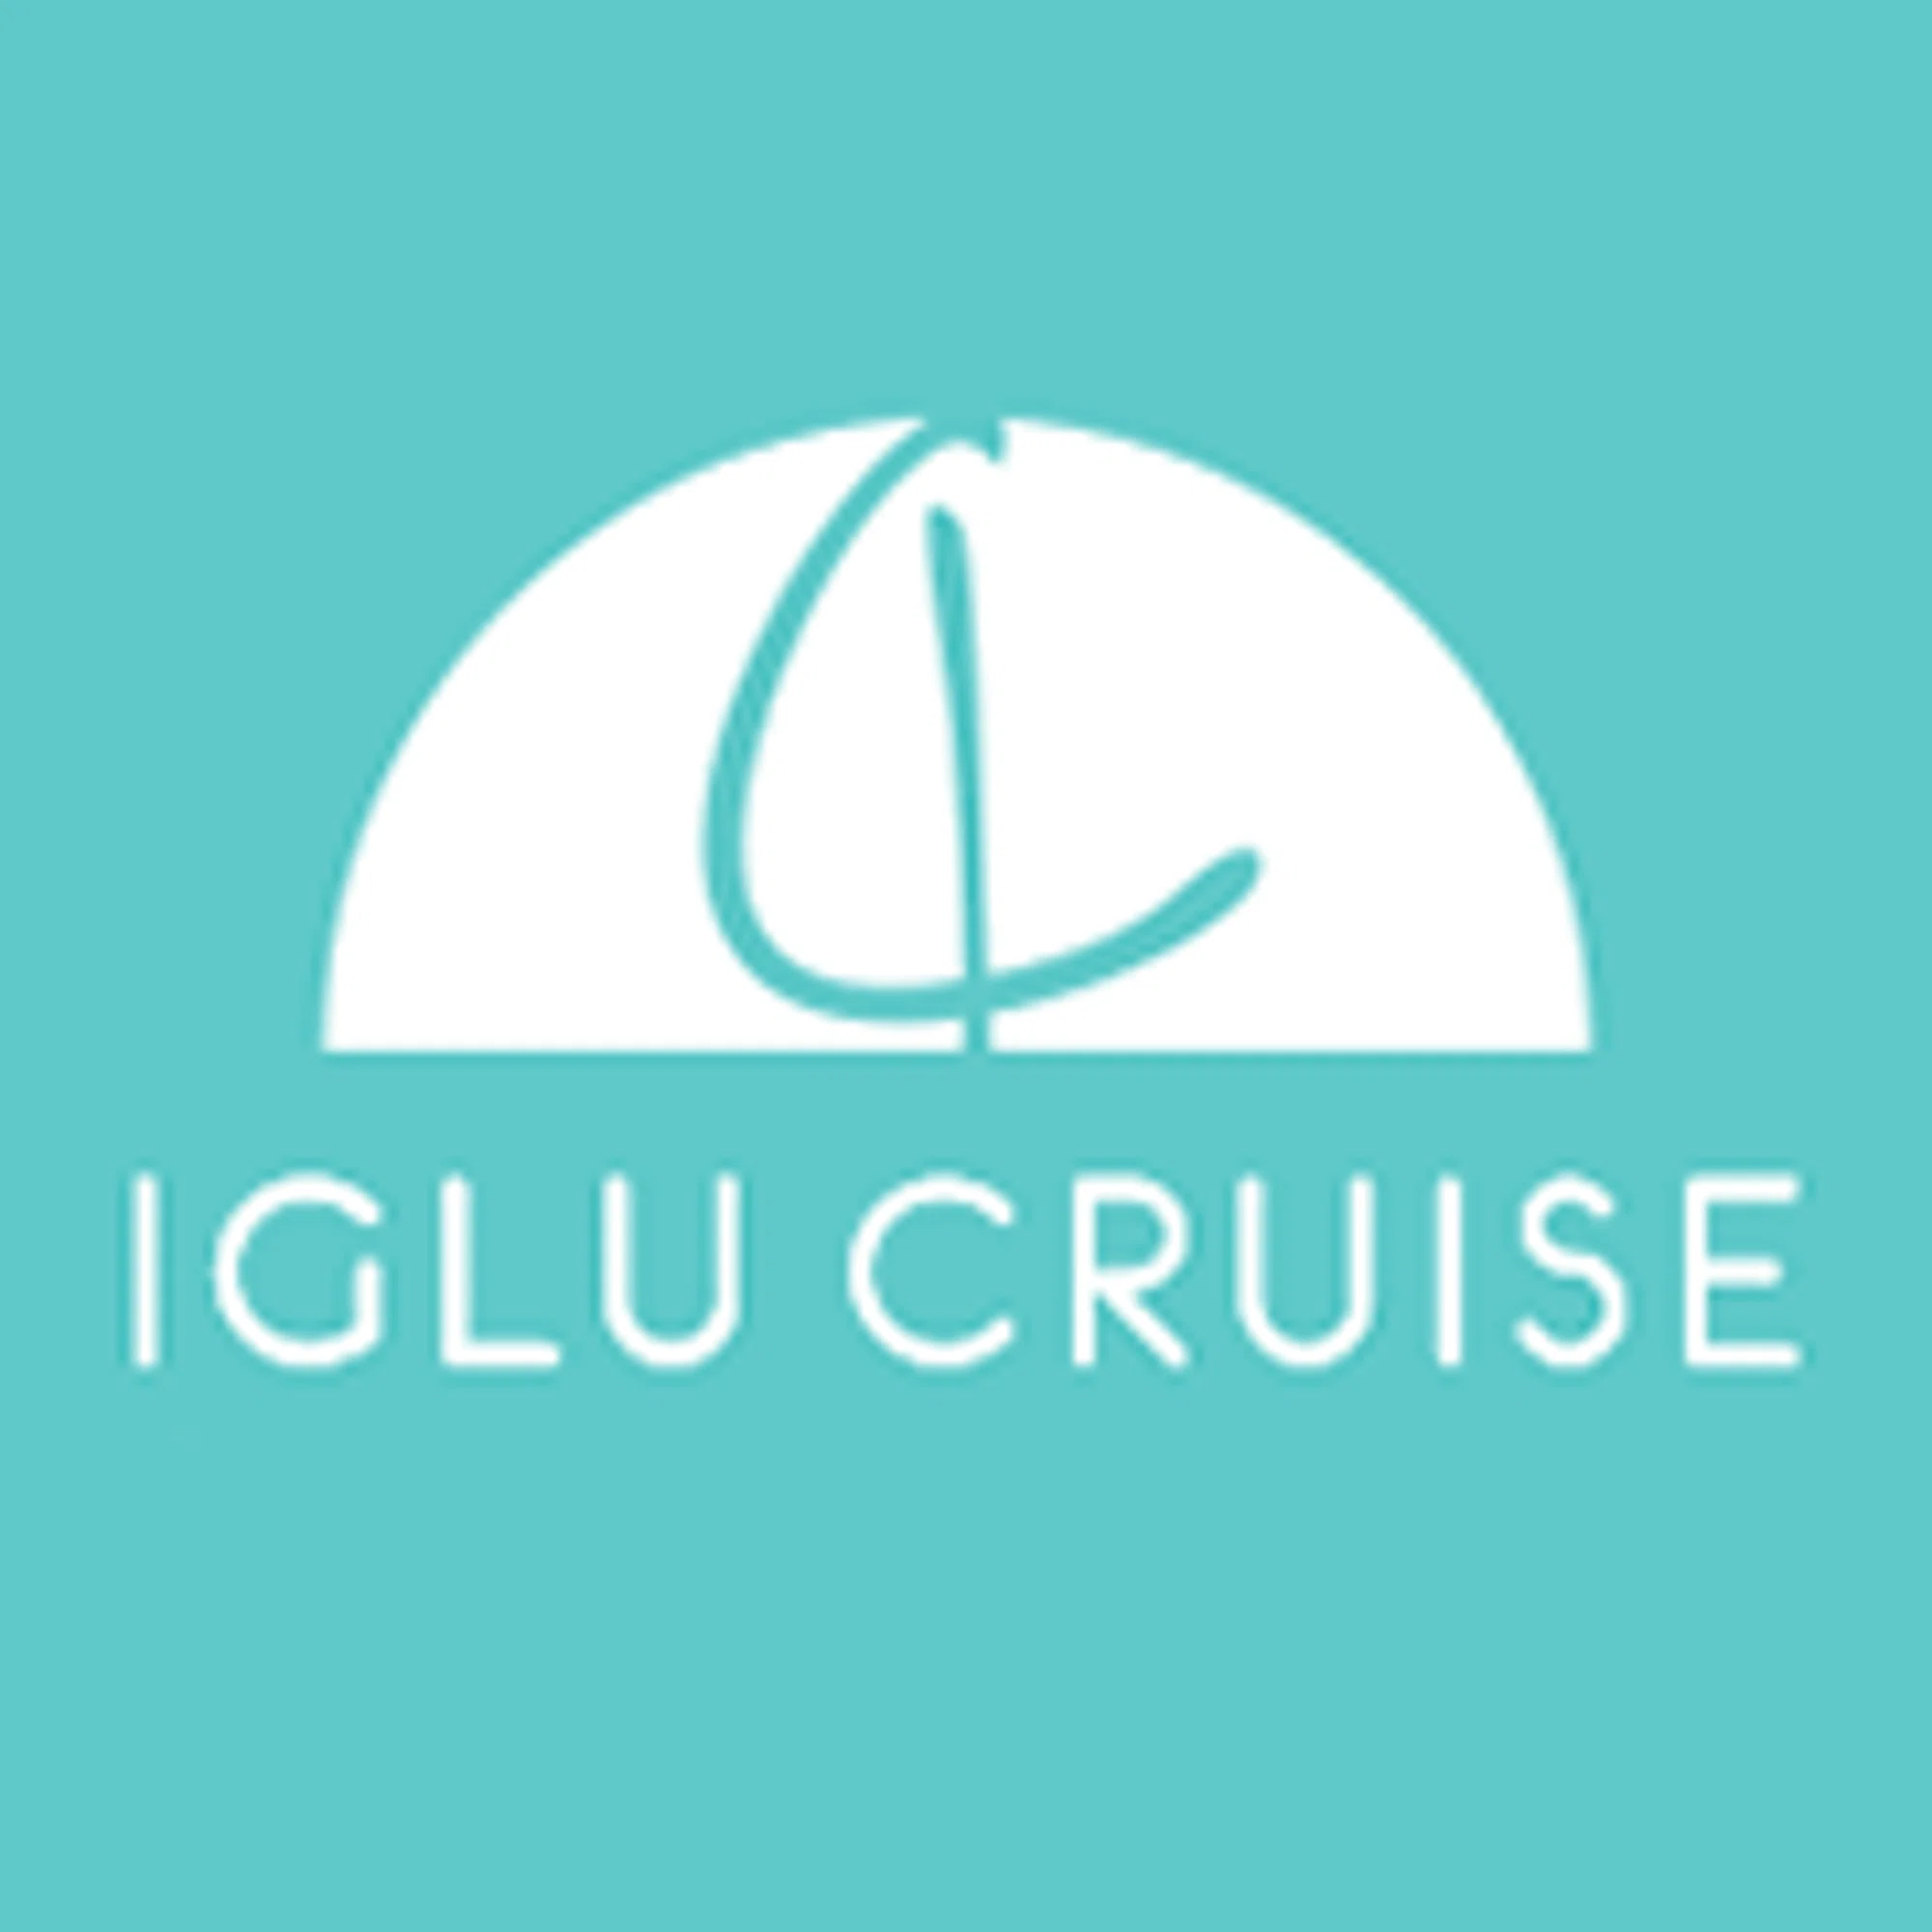 iglu cruise promo code 2023